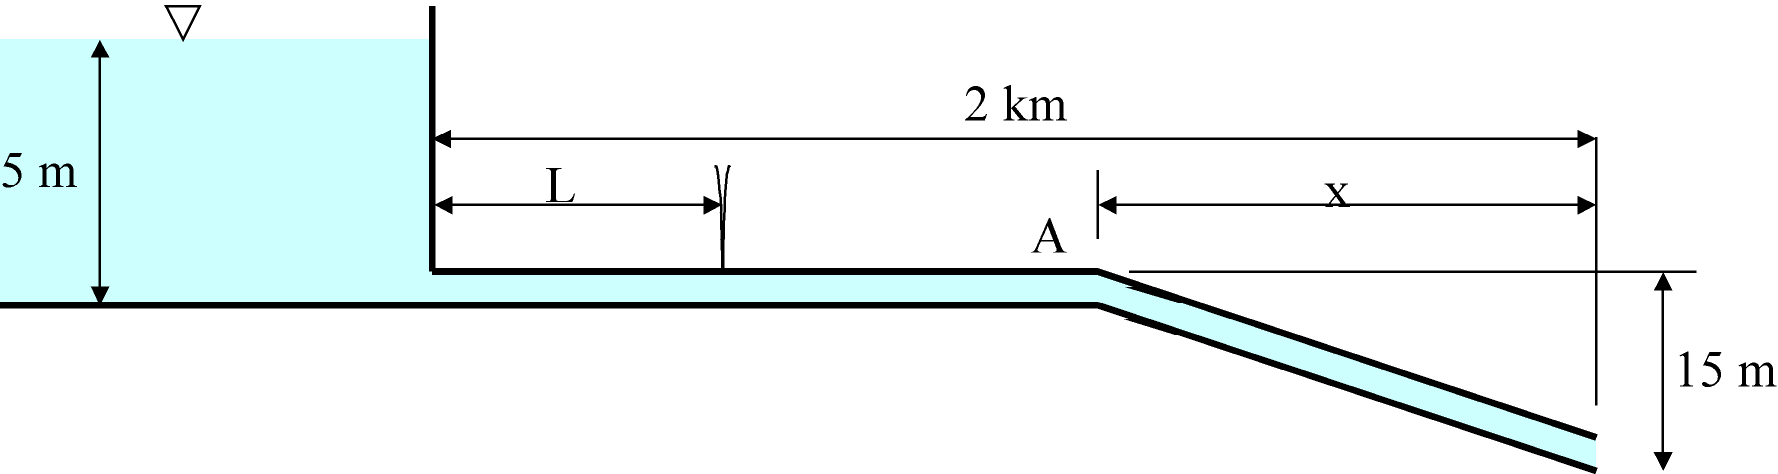 Problemas de Ingeniería Fluidomecánica Problema 4.8 La figura 1 representa el perfil simplificado de un oleoducto real en el Ártico que funciona en régimen estacionario.